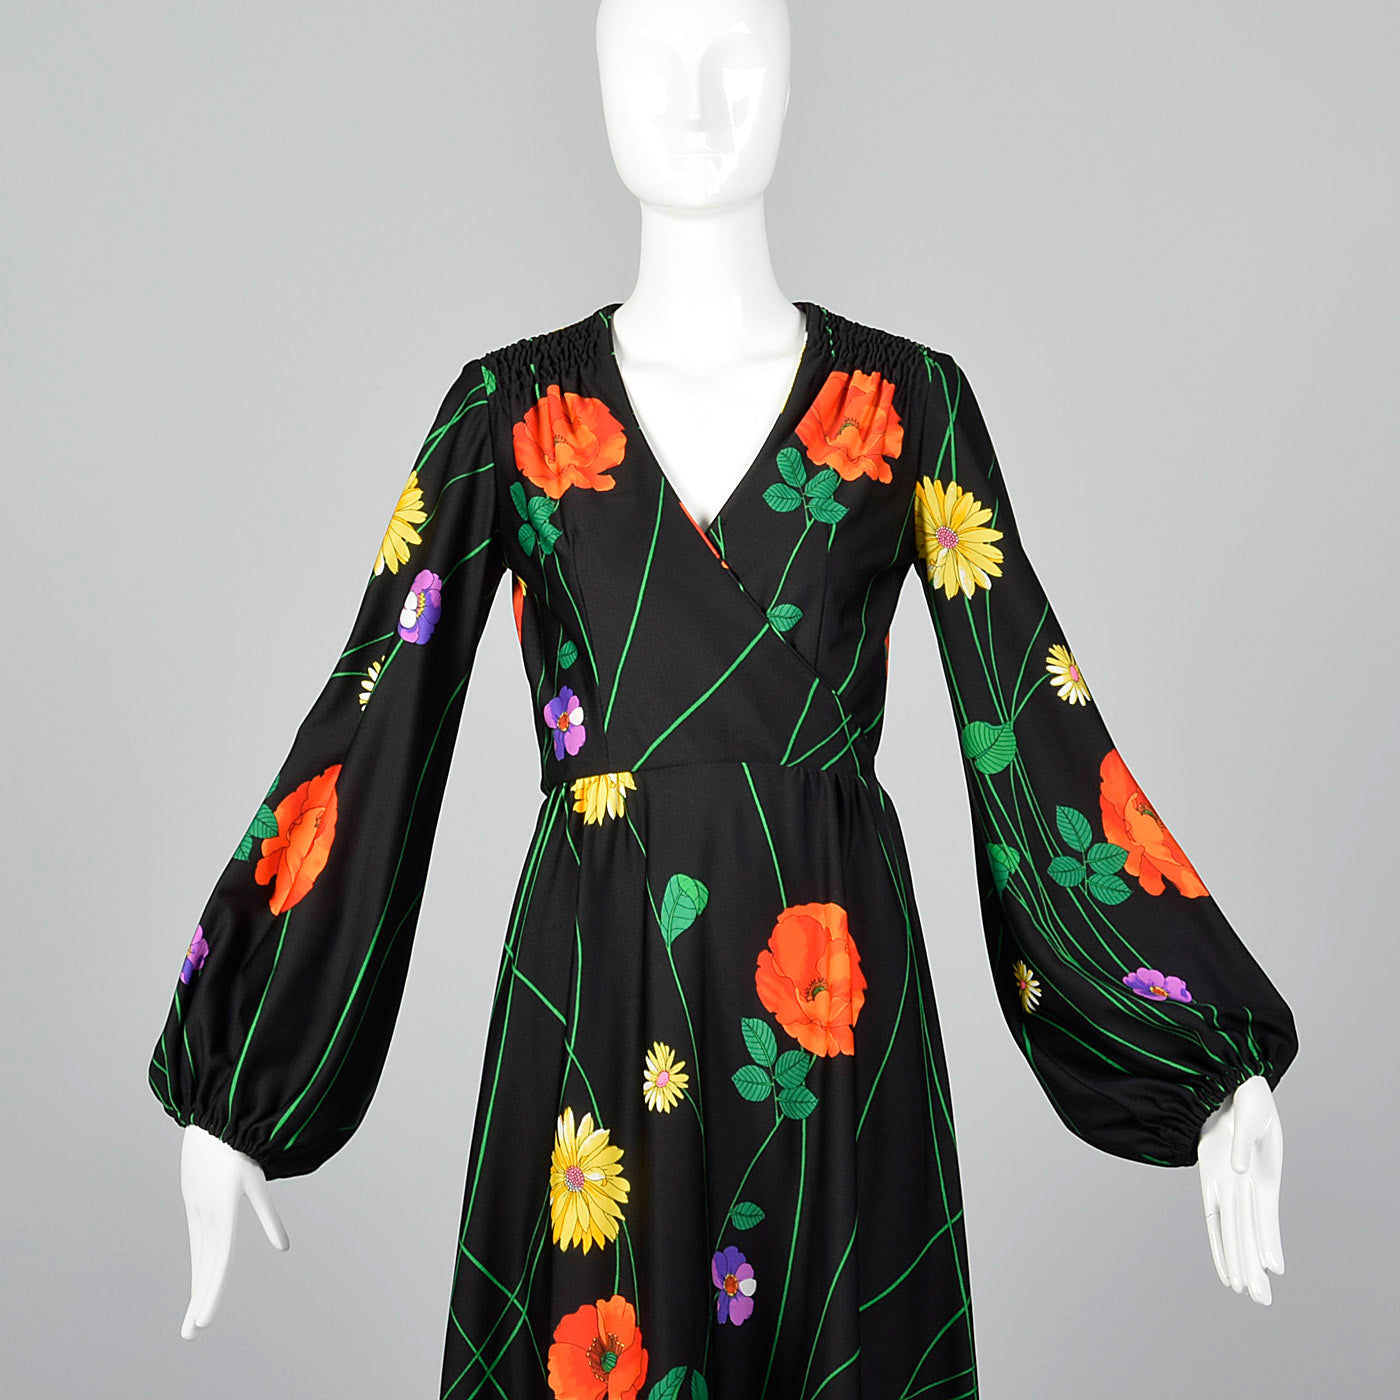 1970s Black Floral Midi Dress with Bishop Sleeves